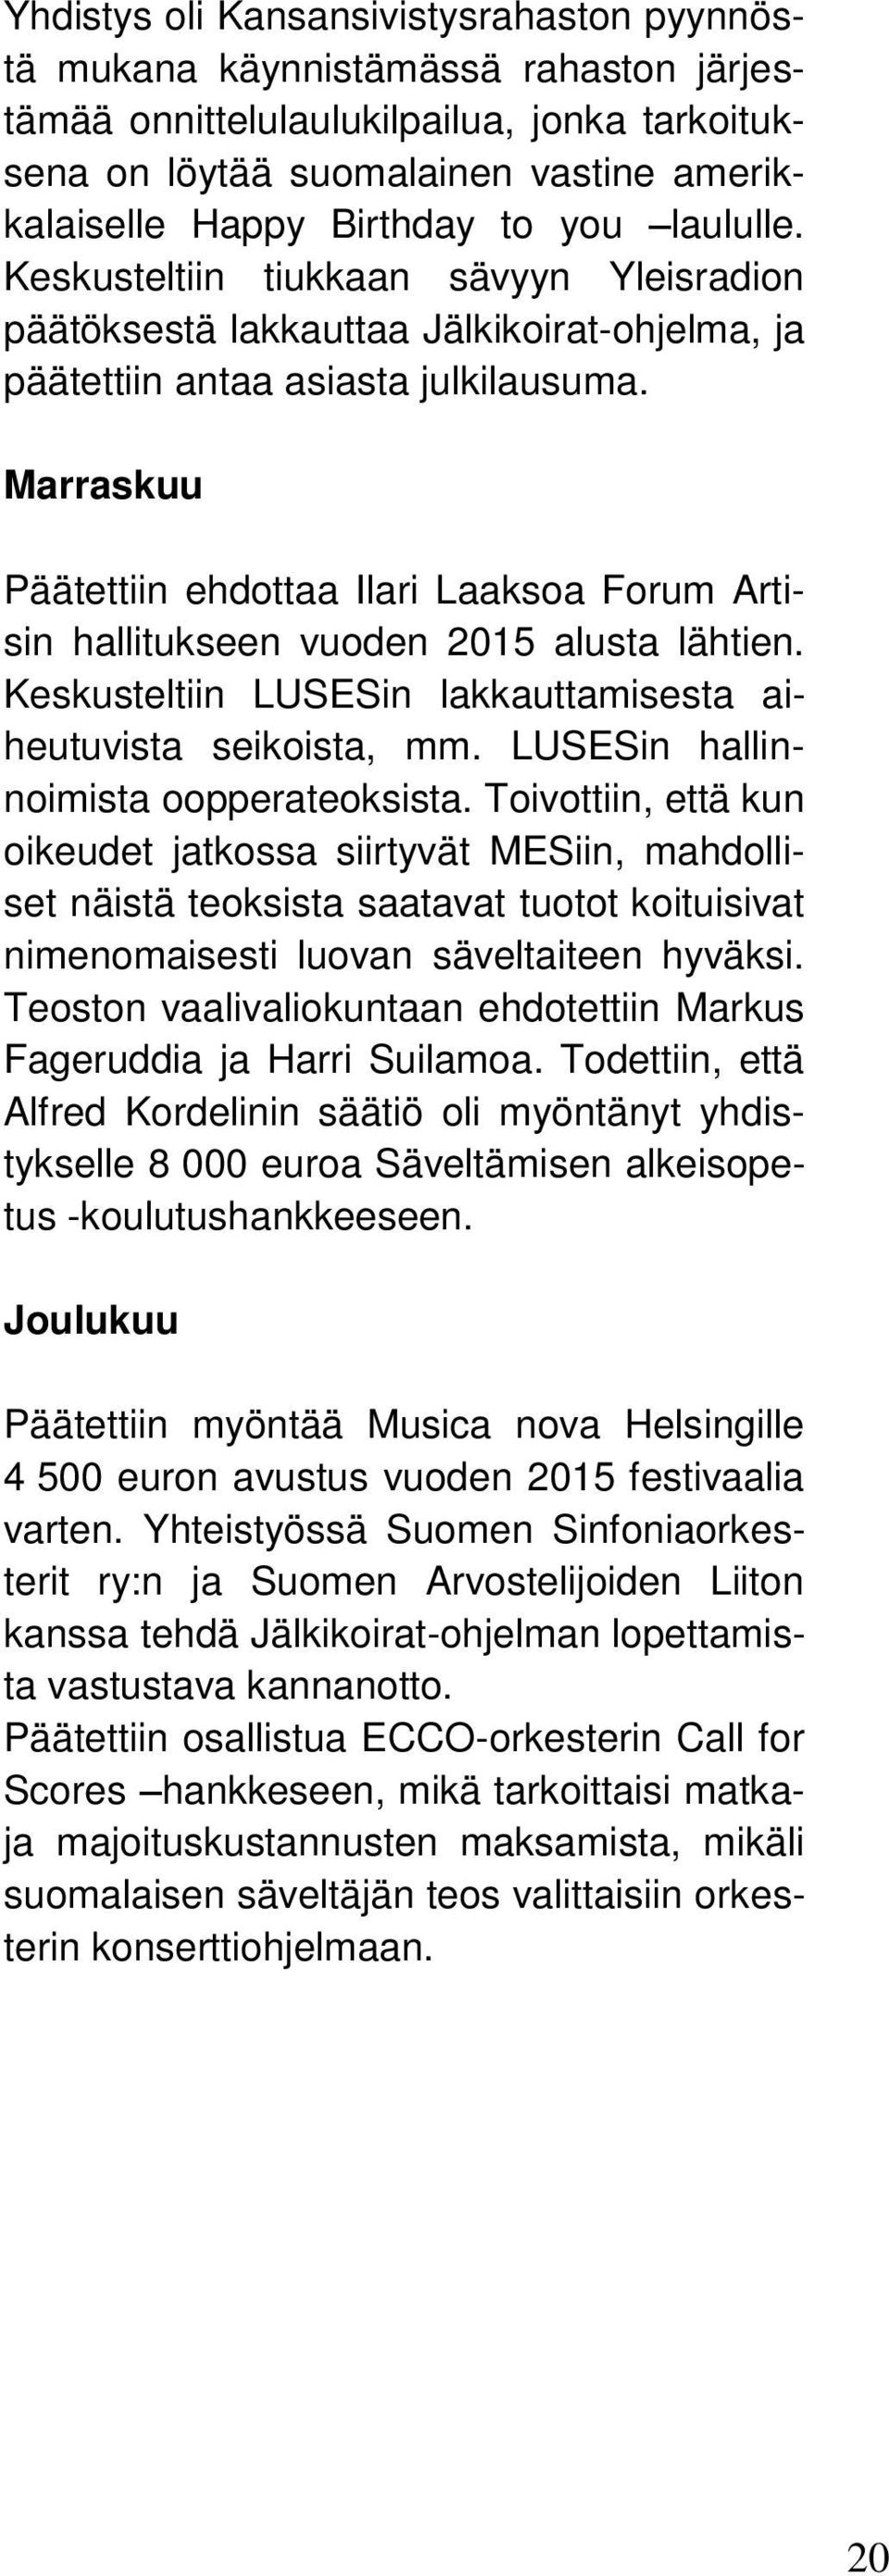 Marraskuu Päätettiin ehdottaa Ilari Laaksoa Forum Artisin hallitukseen vuoden 2015 alusta lähtien. Keskusteltiin LUSESin lakkauttamisesta aiheutuvista seikoista, mm.